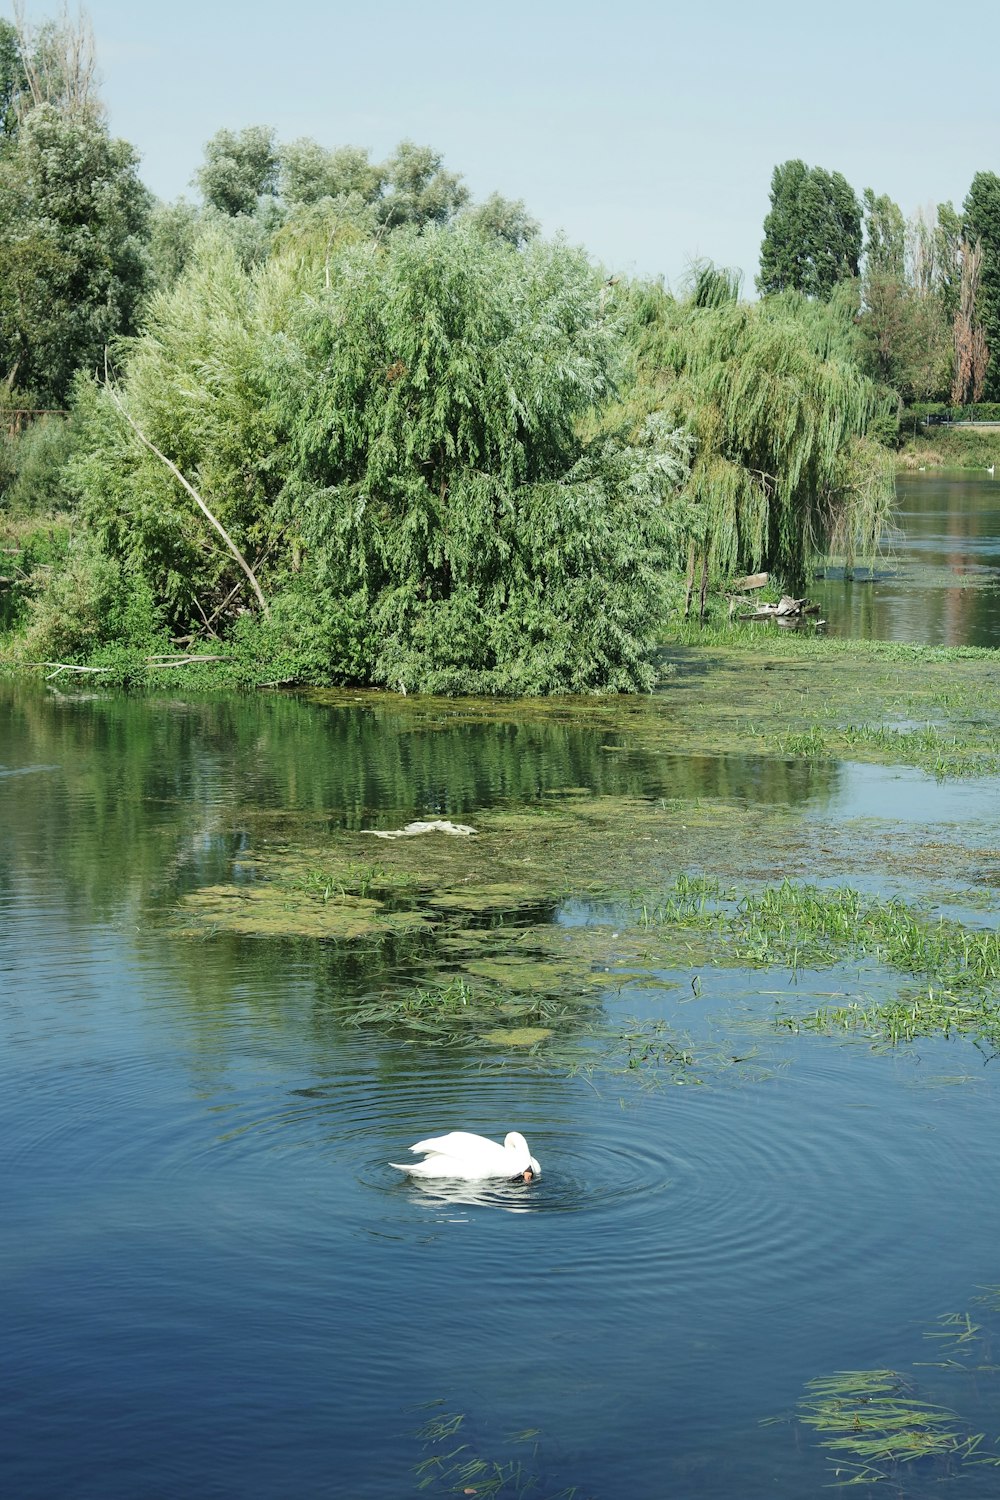 Un cigno che nuota in un lago